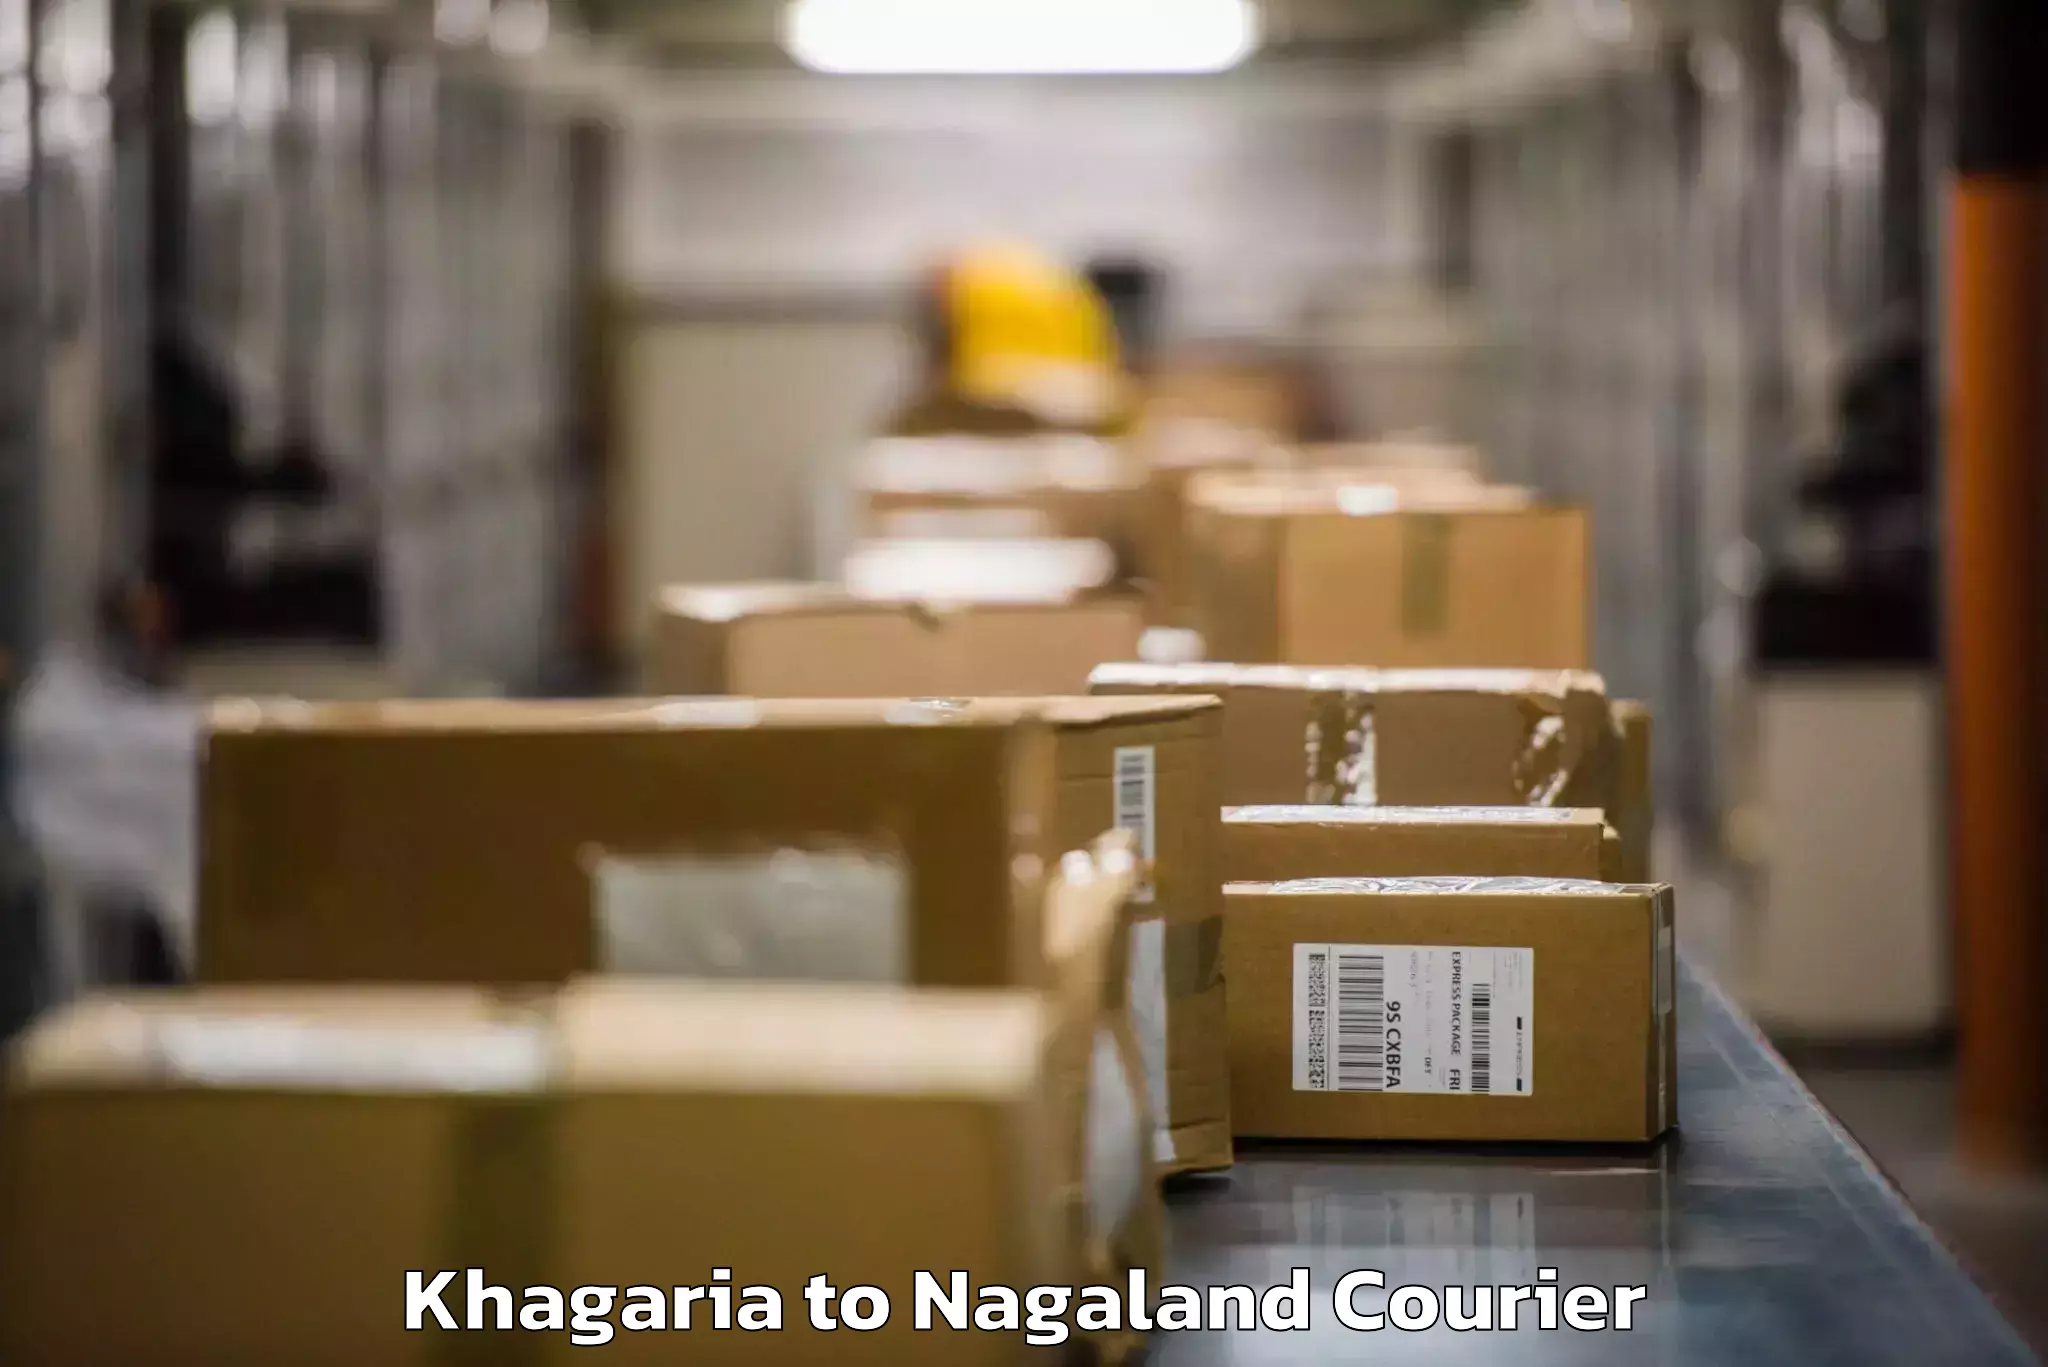 Hassle-free luggage shipping Khagaria to Longleng